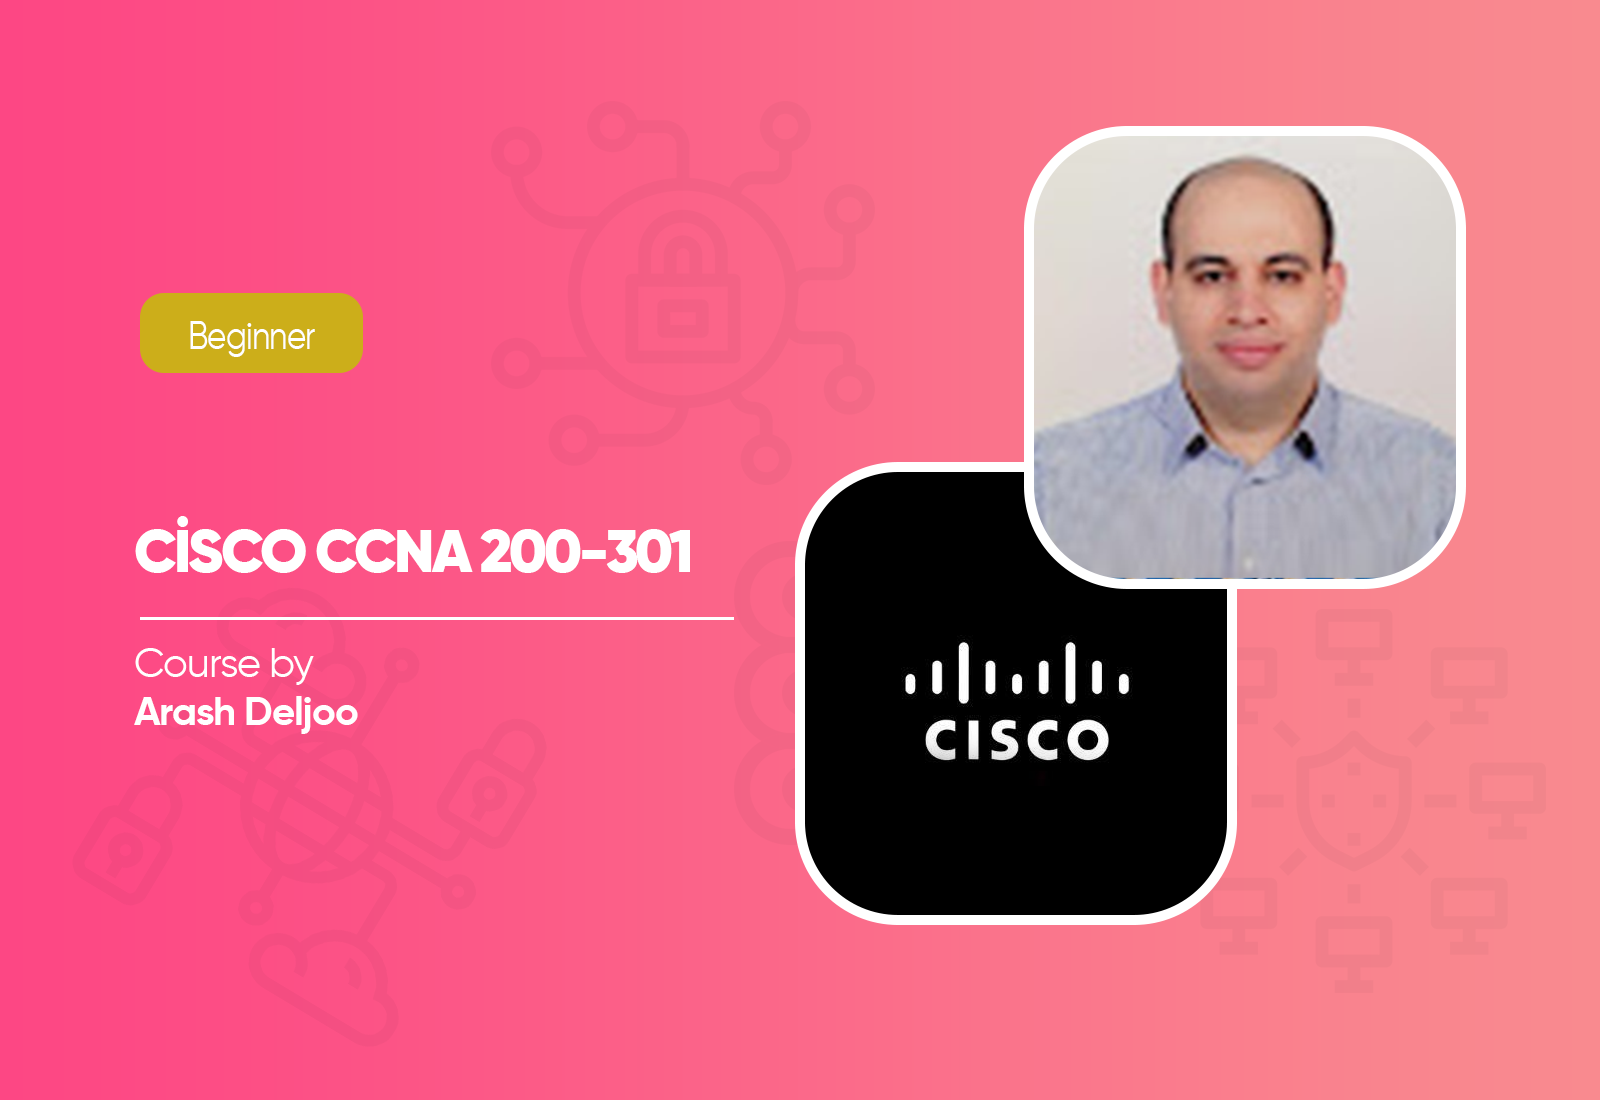 Cisco CCNA 200-301 Course by Arash Deljoo